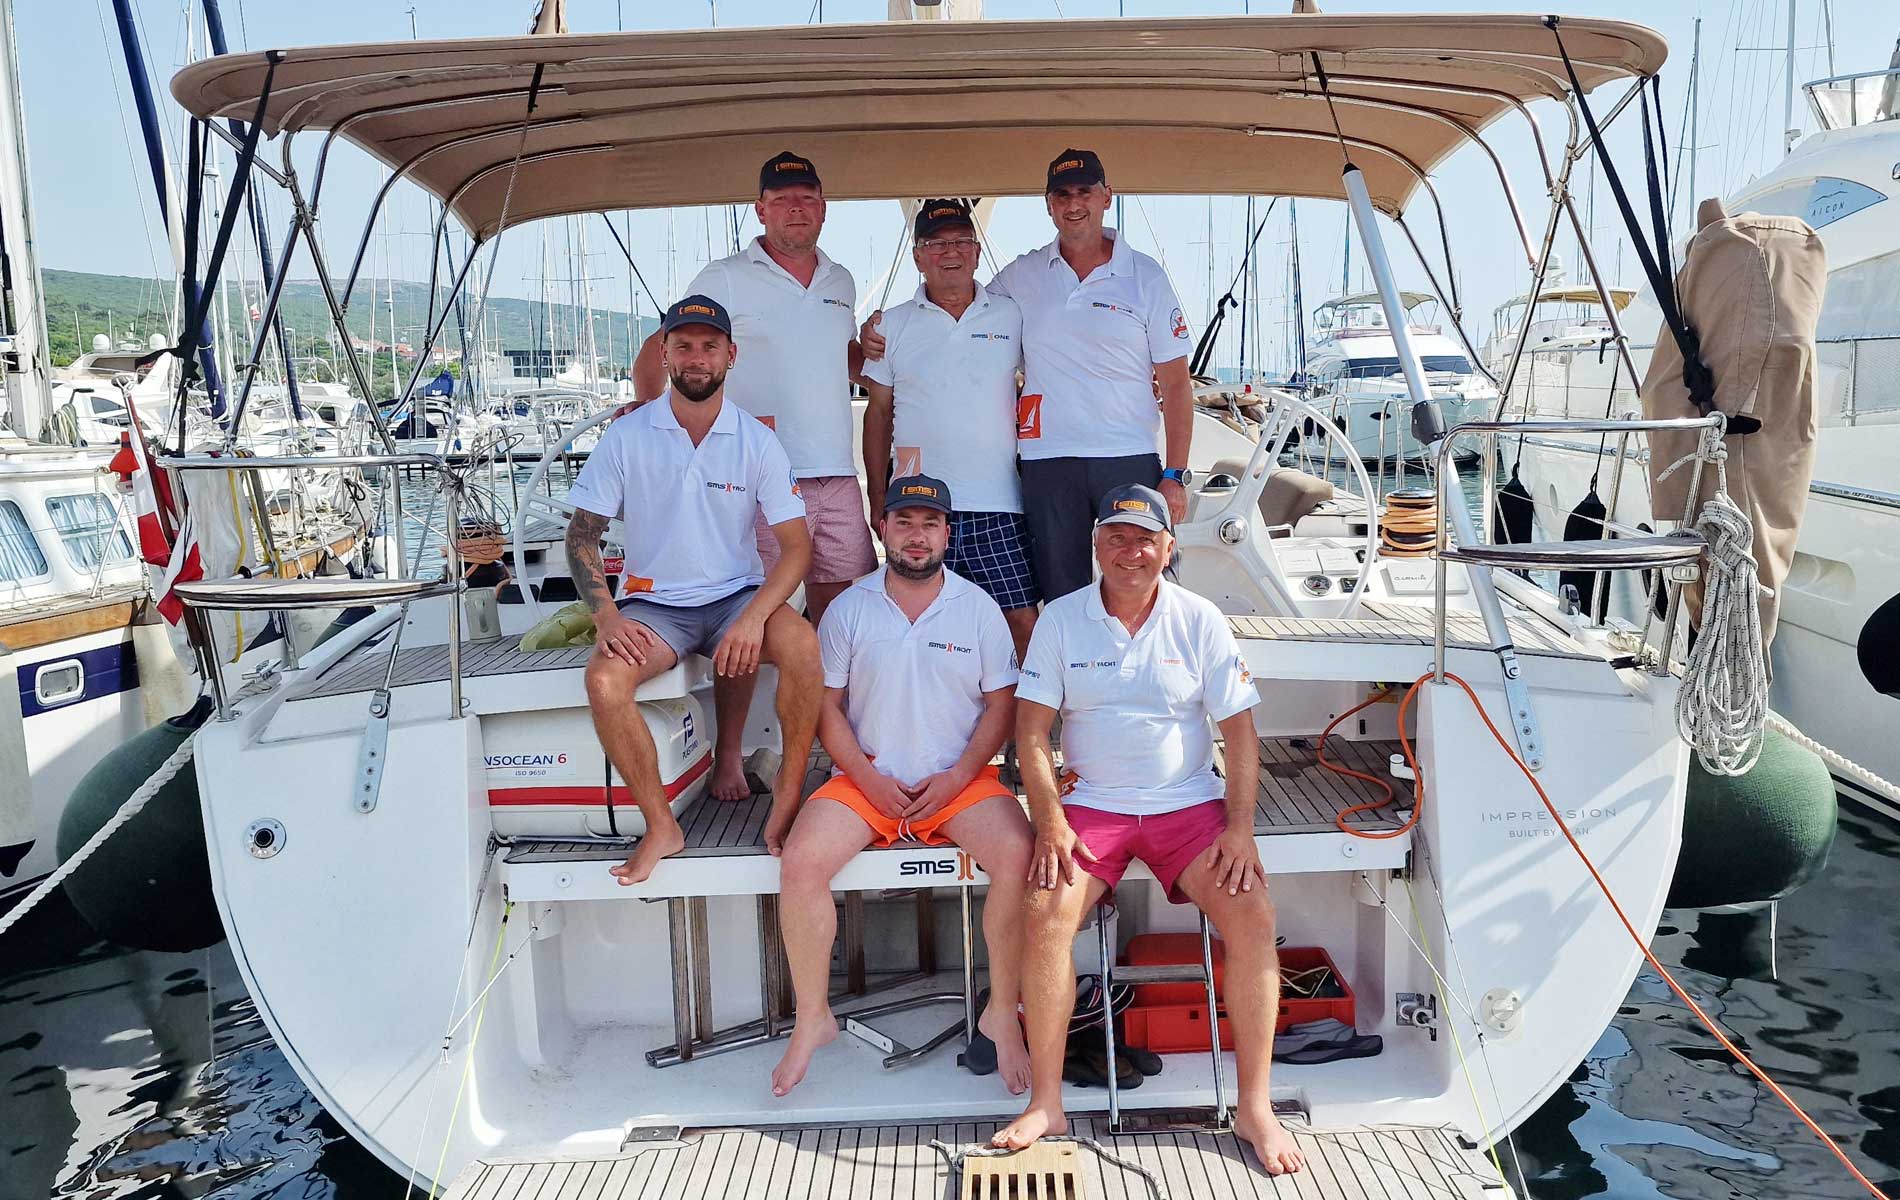 Teambuilding-Erlebnis auf hoher See: Yacht-Ausflug an der Adriaküste | SMS Group